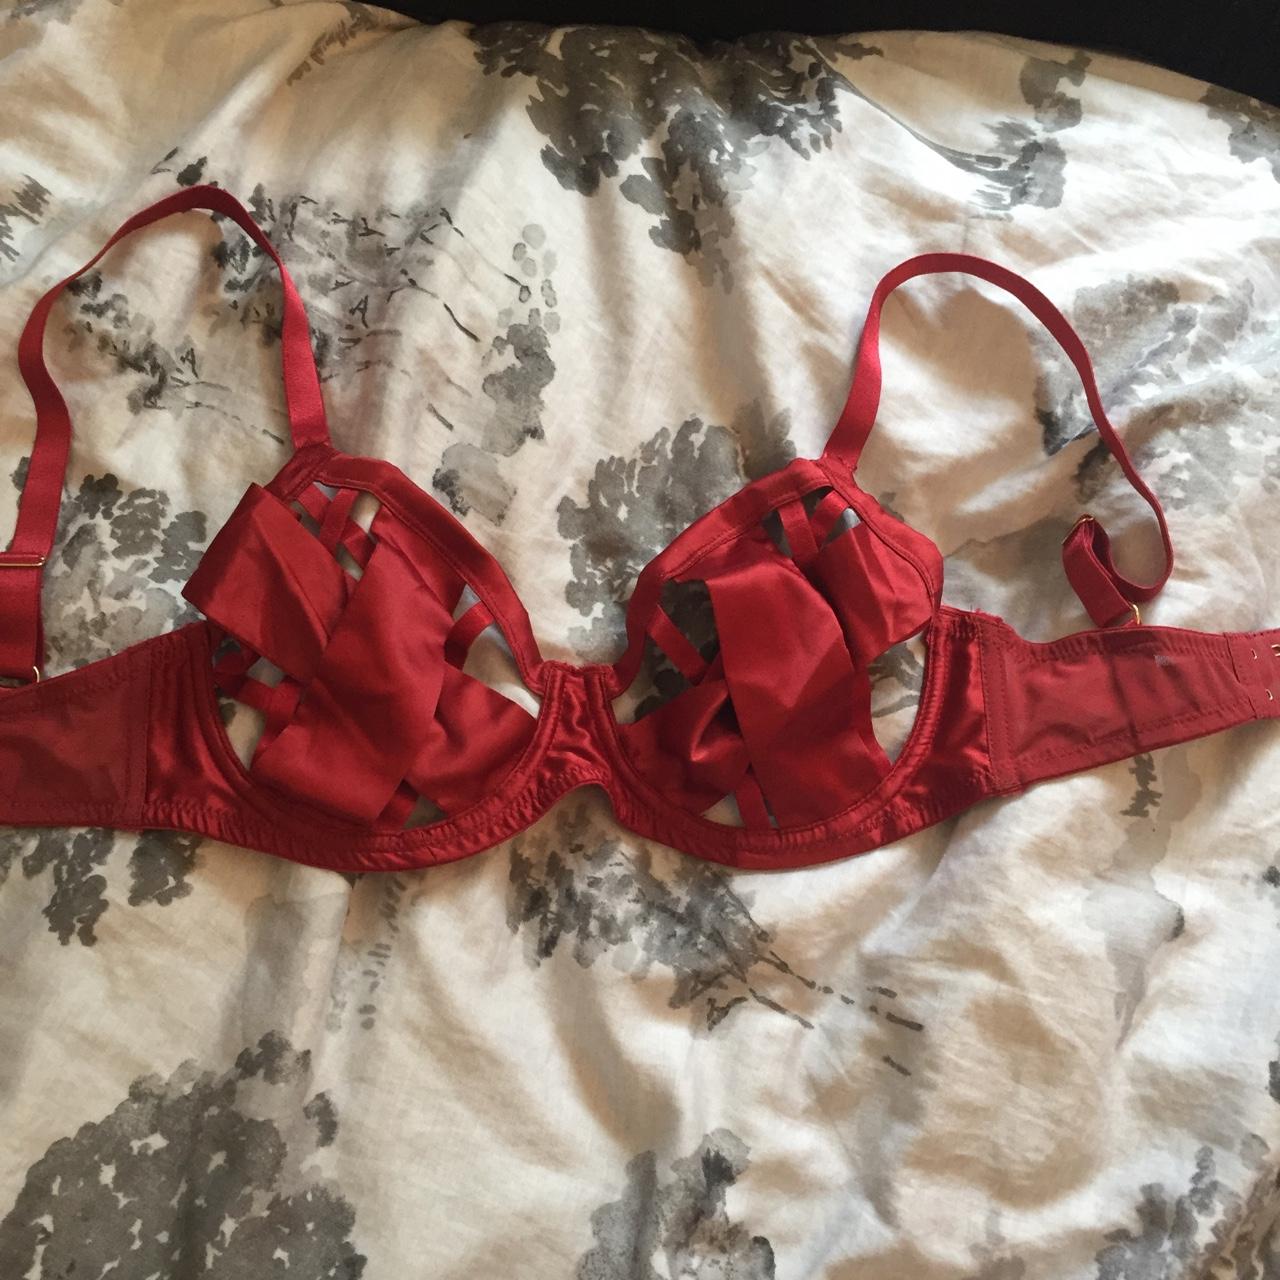 Thrift store on Instagram: Blood red bra set 32B 2400